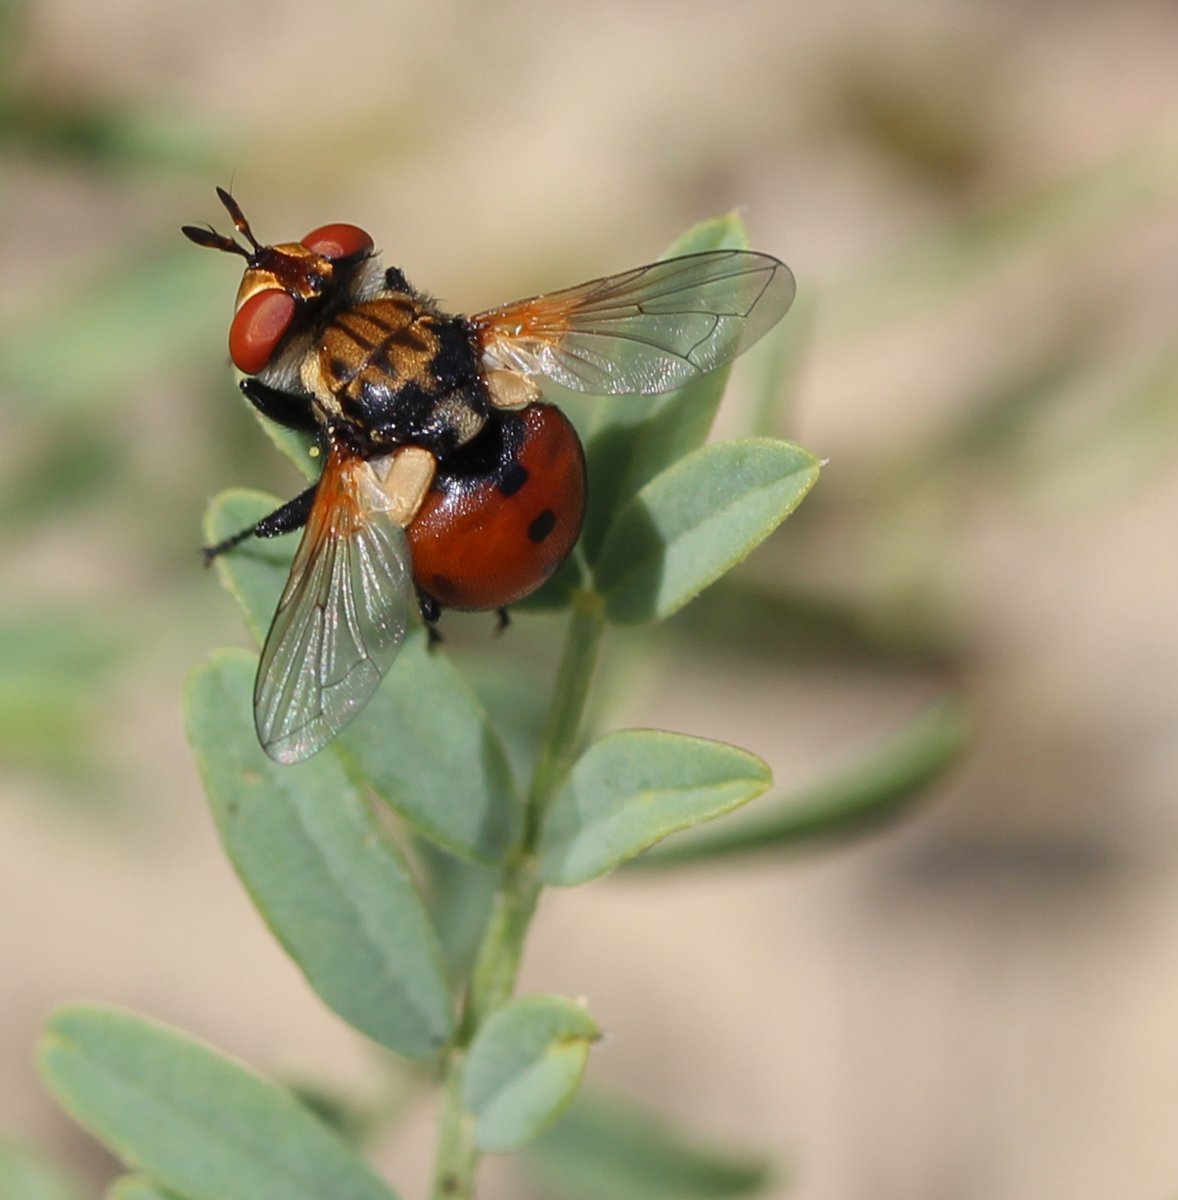 A fly that mimics a ladybug. #Okotoks #Albertabugs